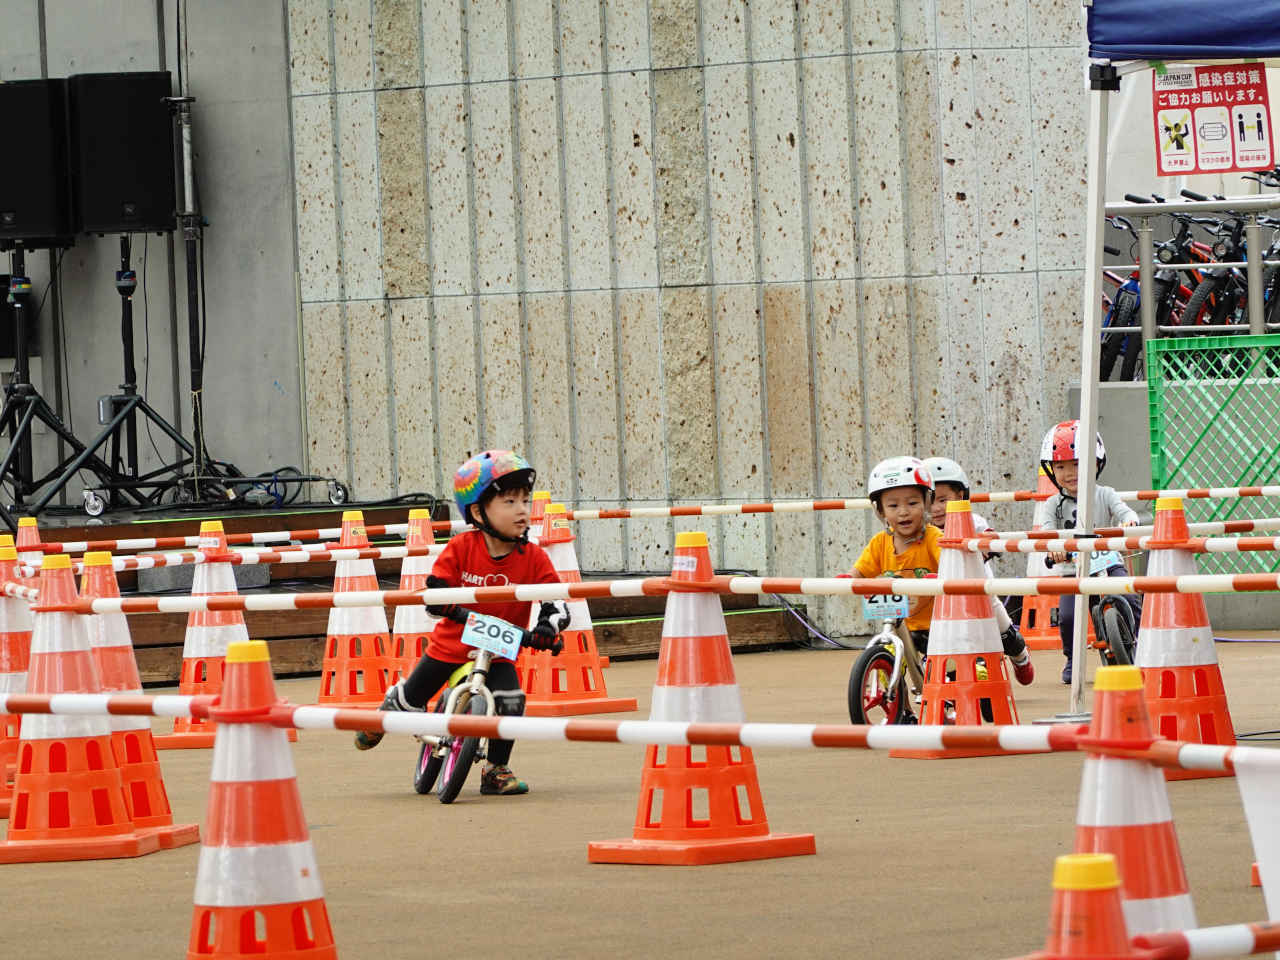 ストライダー大会のジャパンカップキックバイク大会 2歳決勝